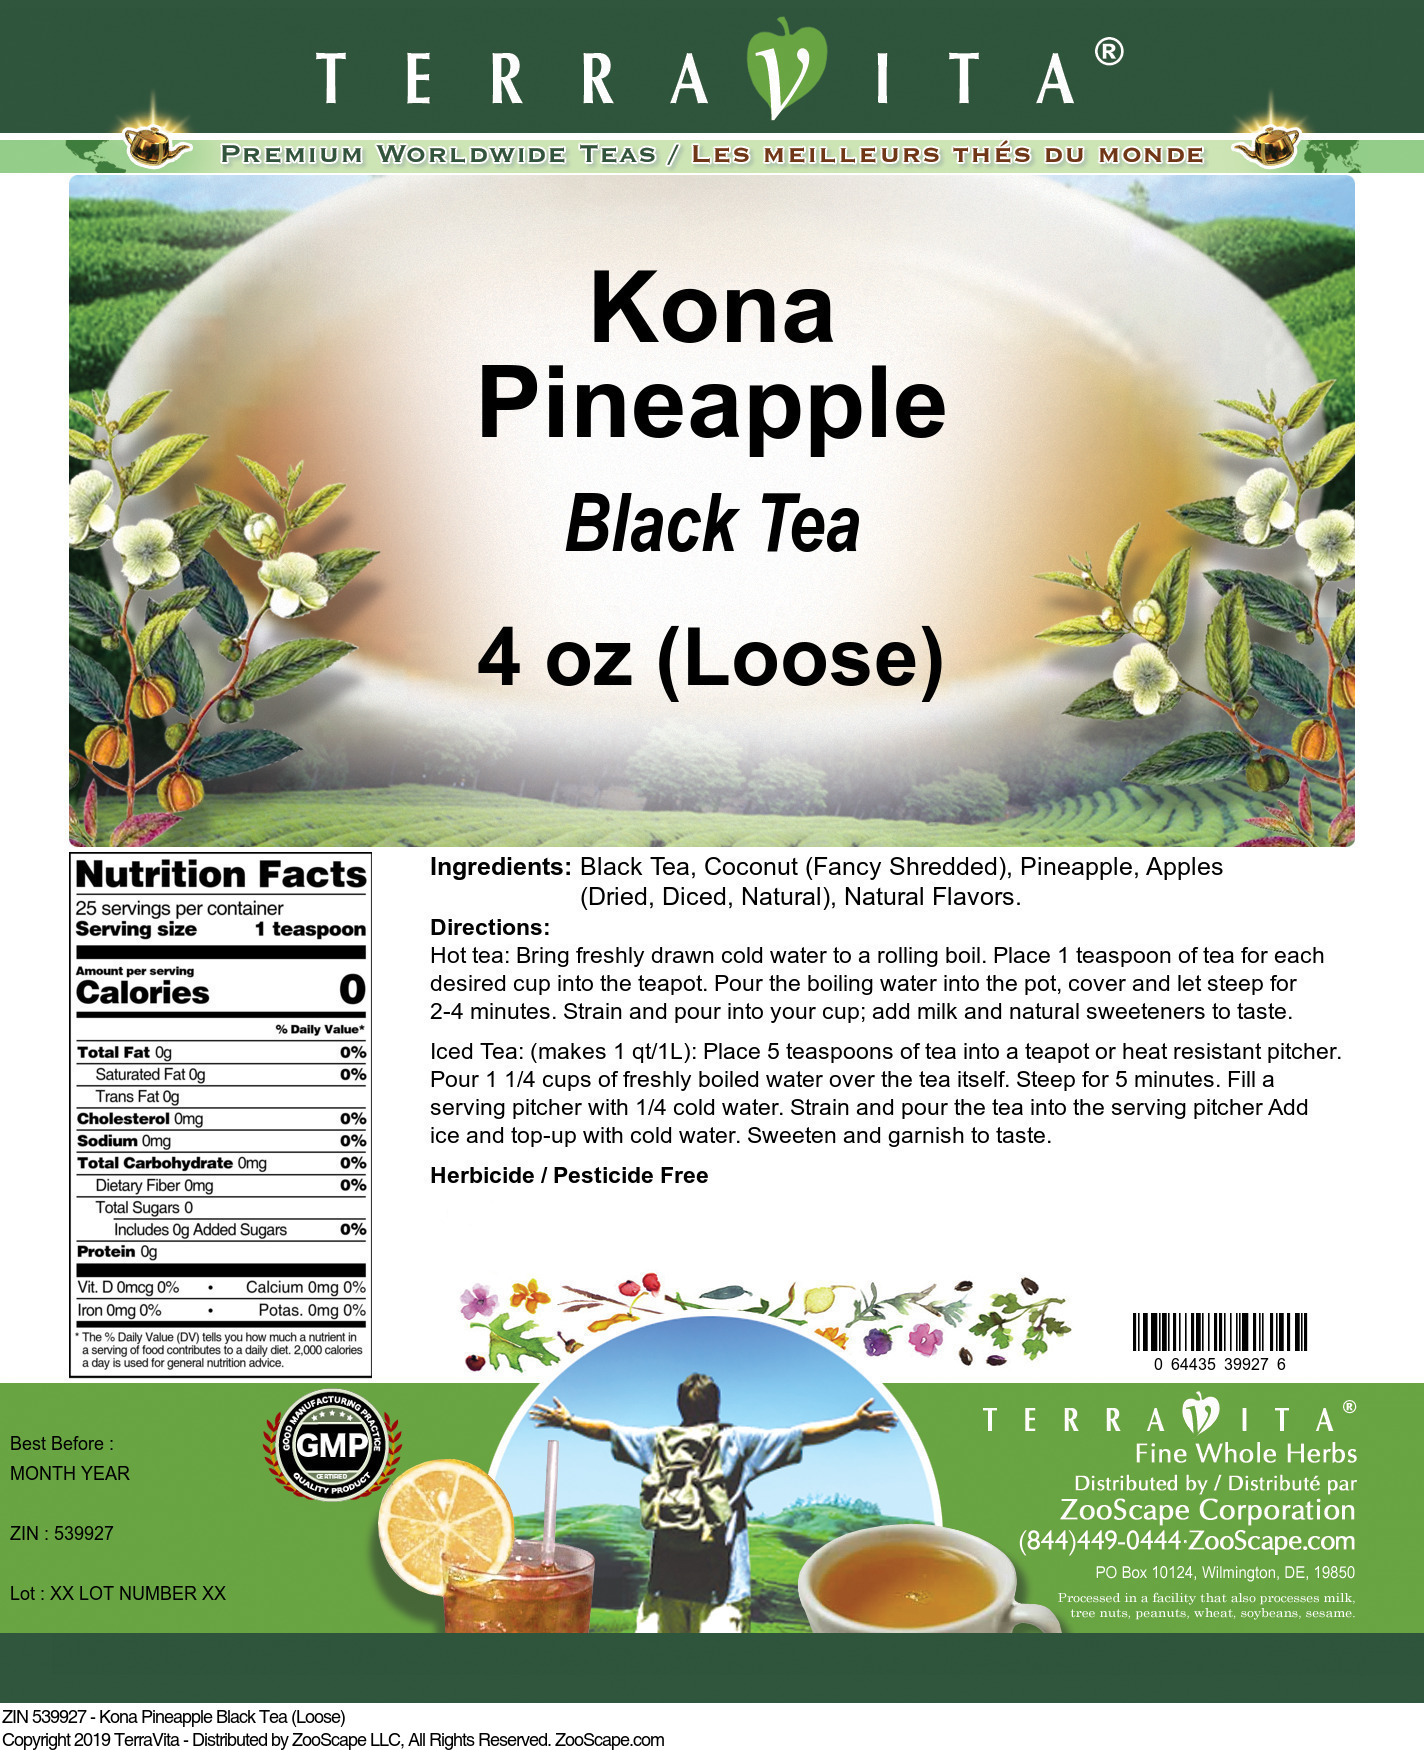 Kona Pineapple Black Tea (Loose) - Label